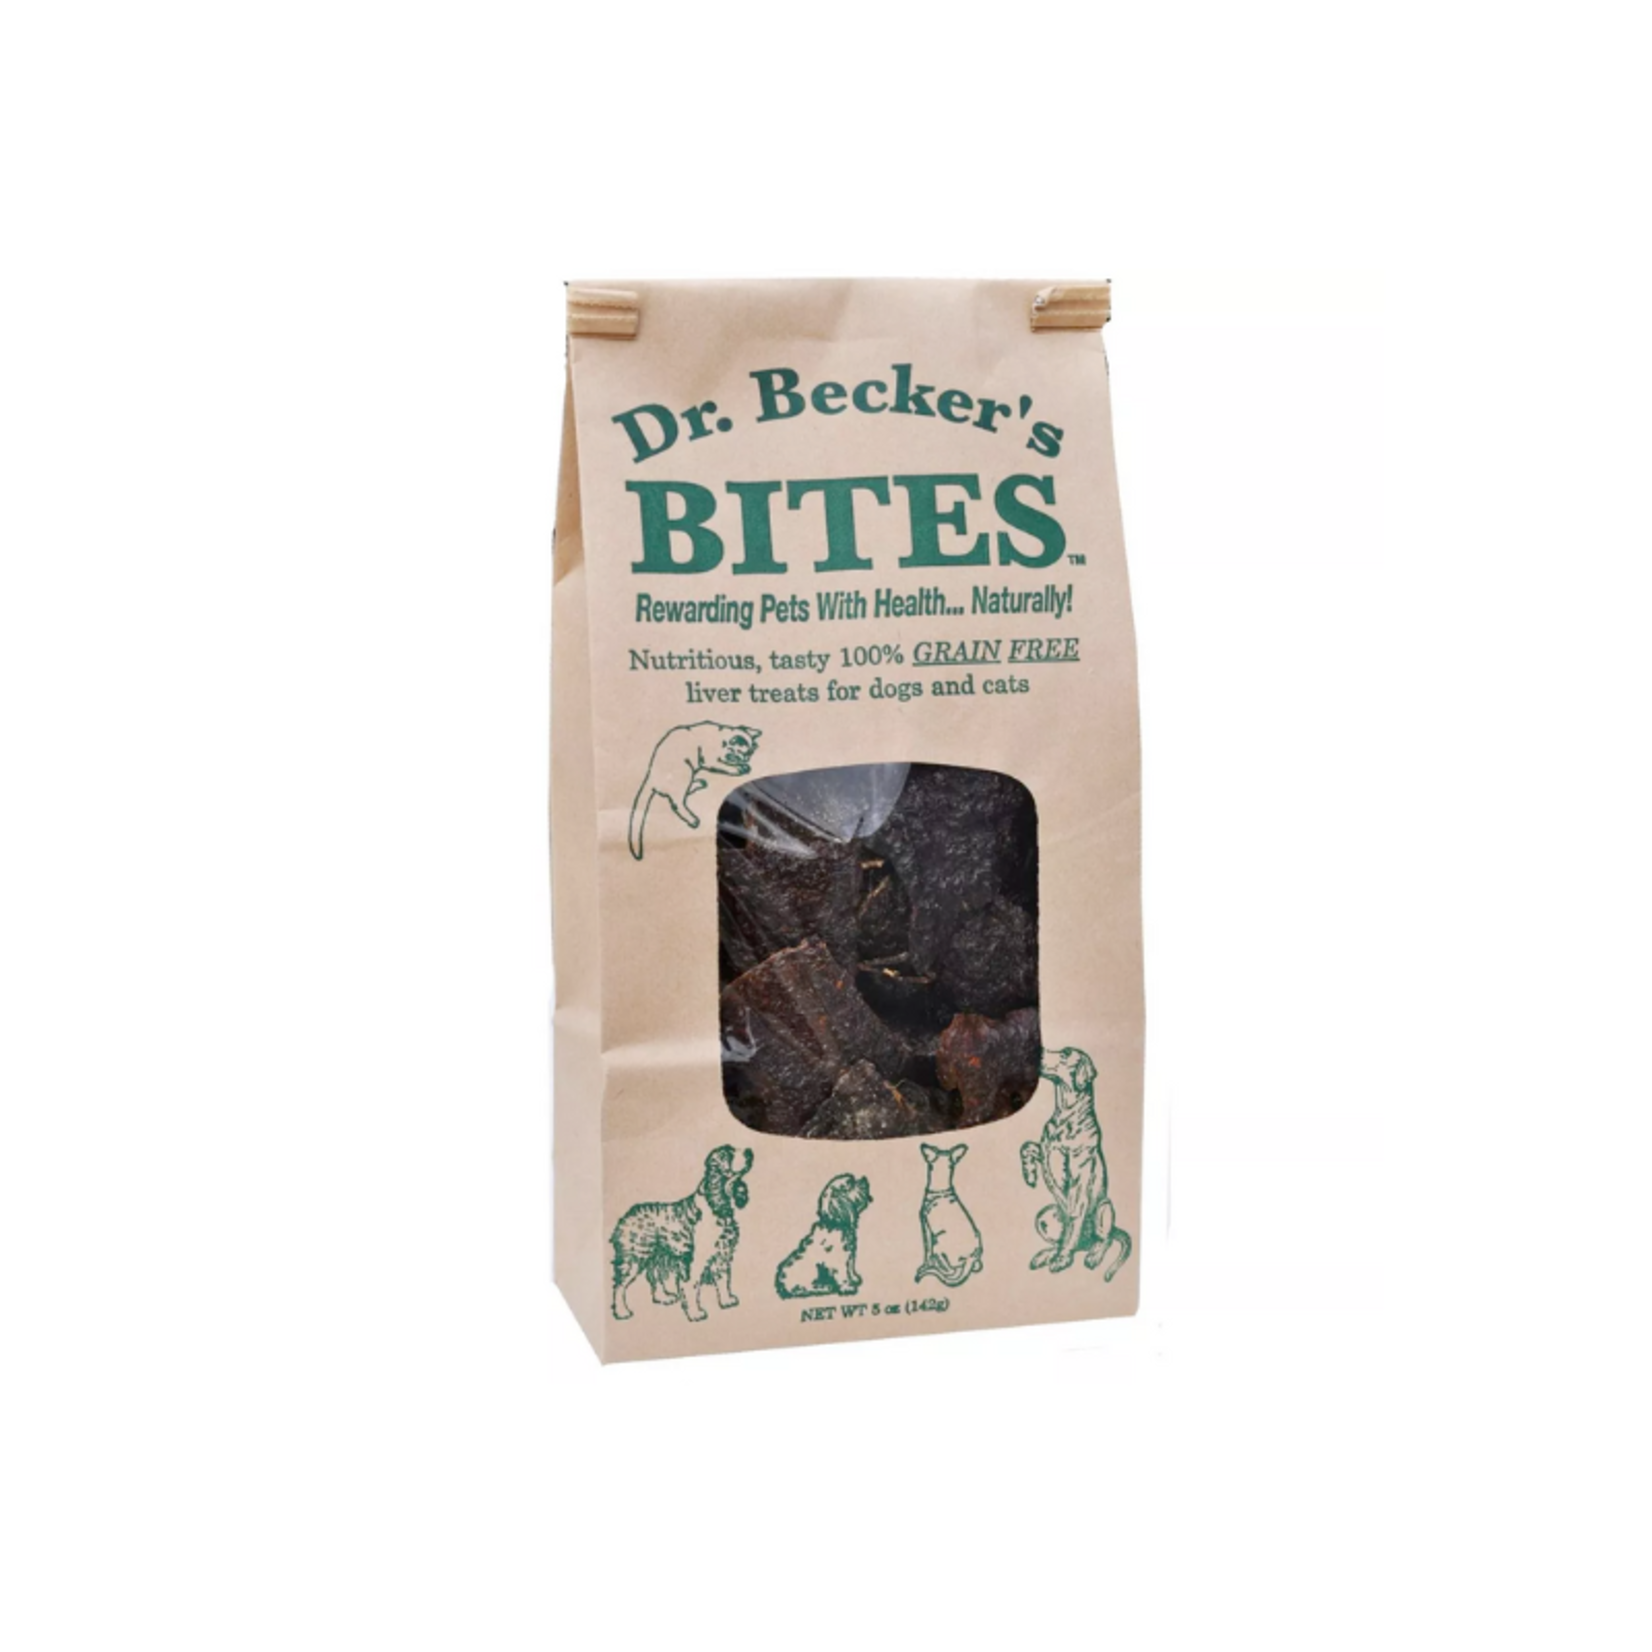 Dr. Becker's Bites 5 oz. - Beef Liver - Dr. Becker's Bites - Dog Treats